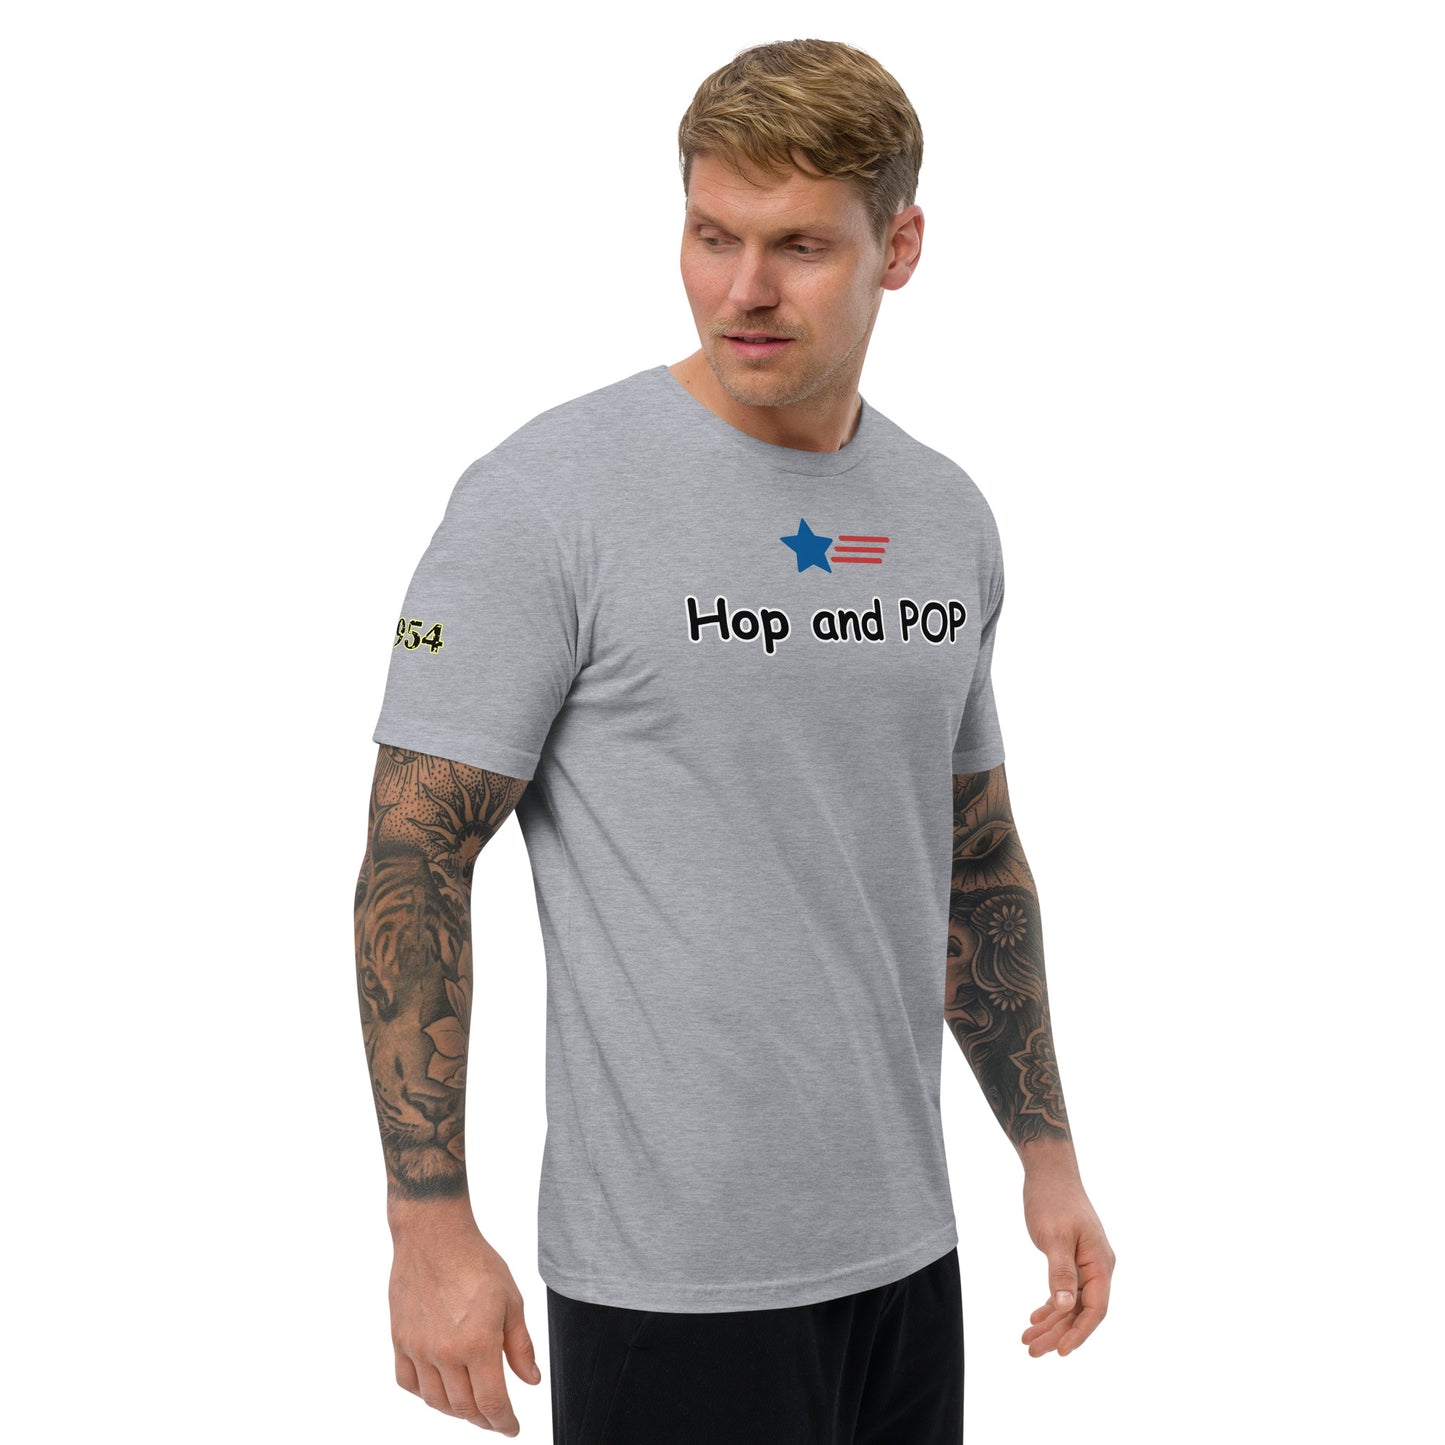 Hop and Pop Short Sleeve T-shirt